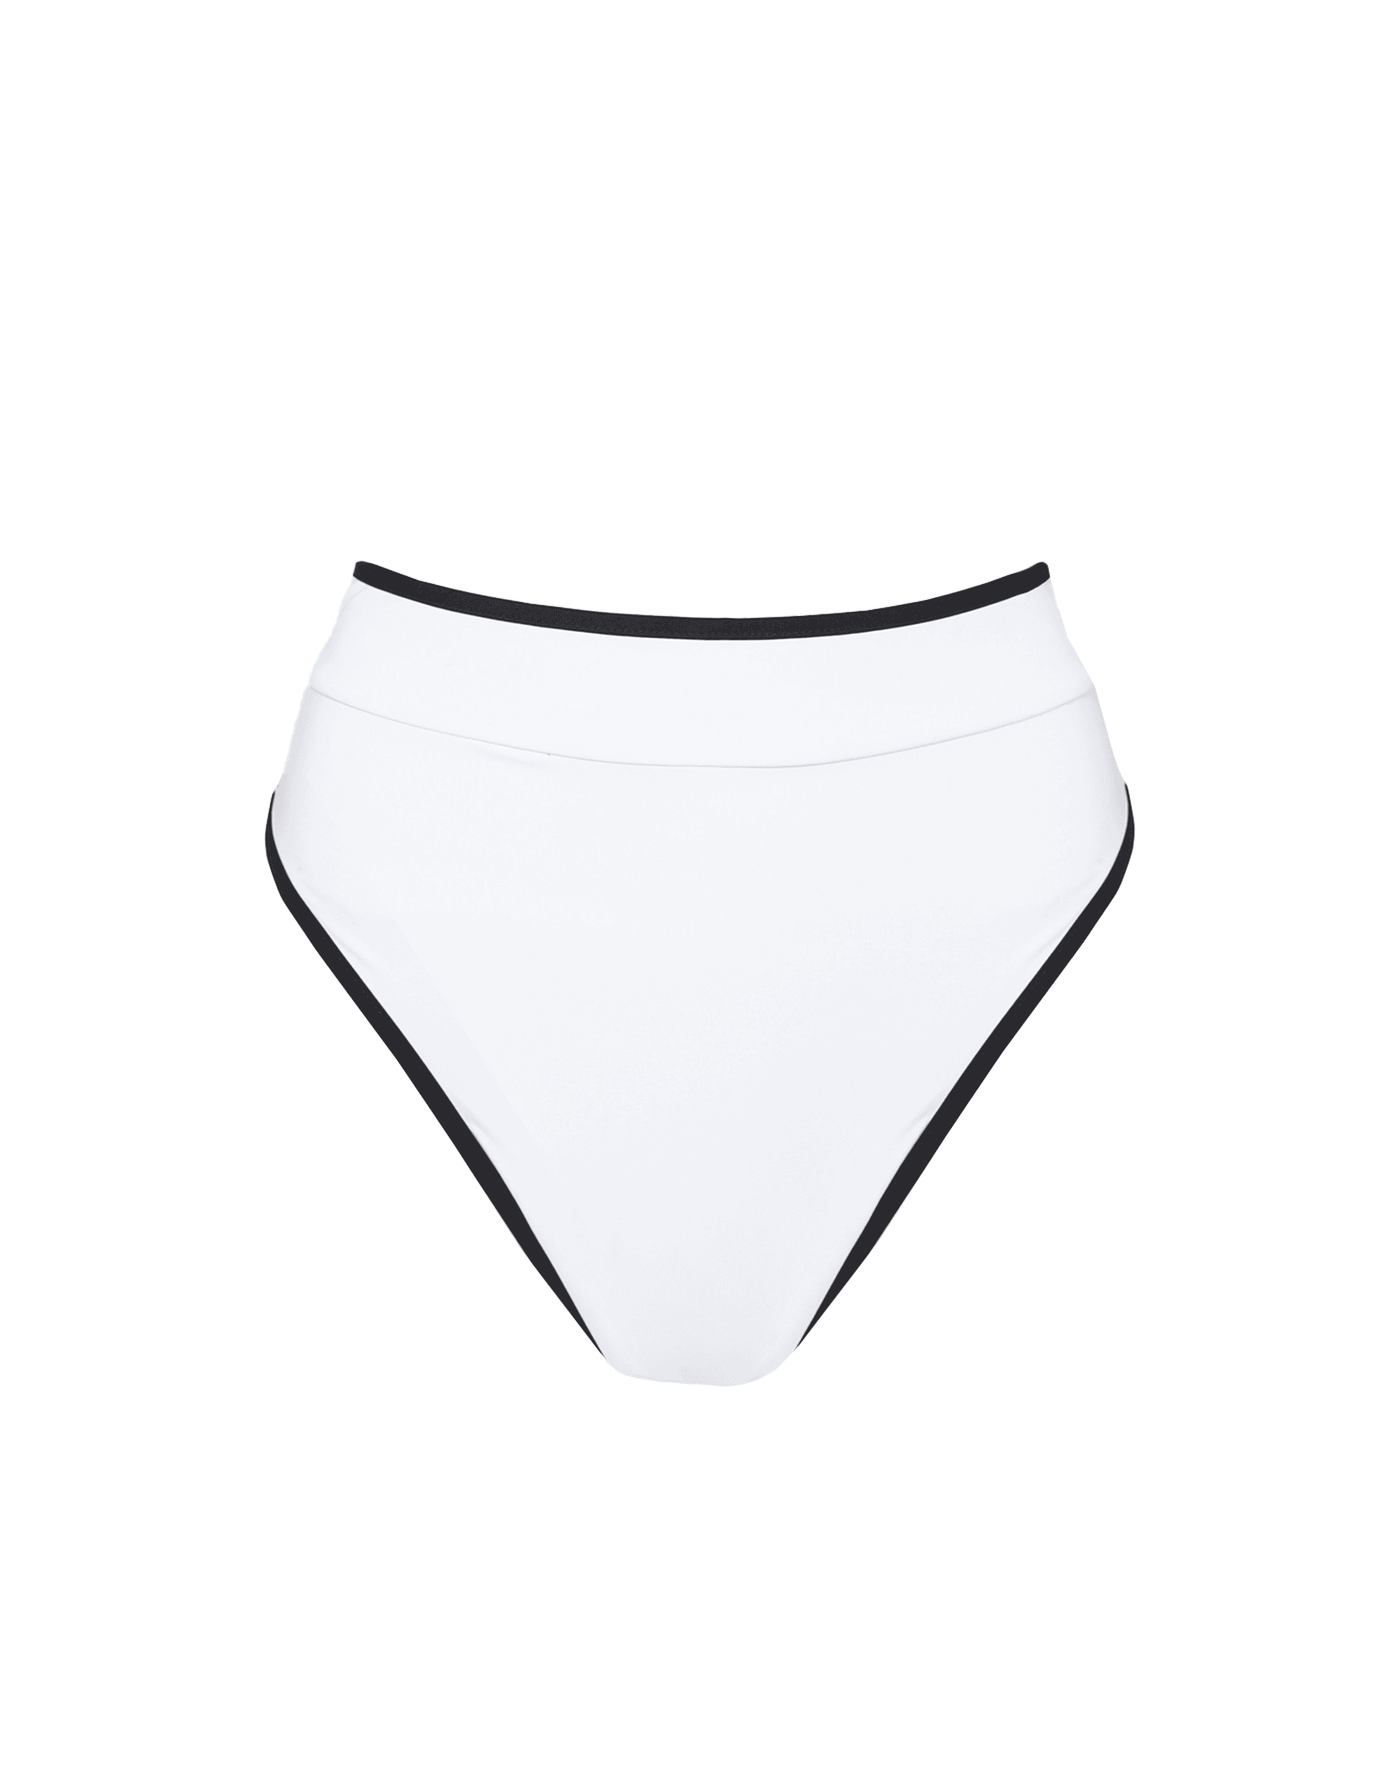 On Board Bikini Bottoms (Black/White) - Reversible High Waisted Bikini Bottoms - Women's Swim - Charcoal Clothing mix-and-match